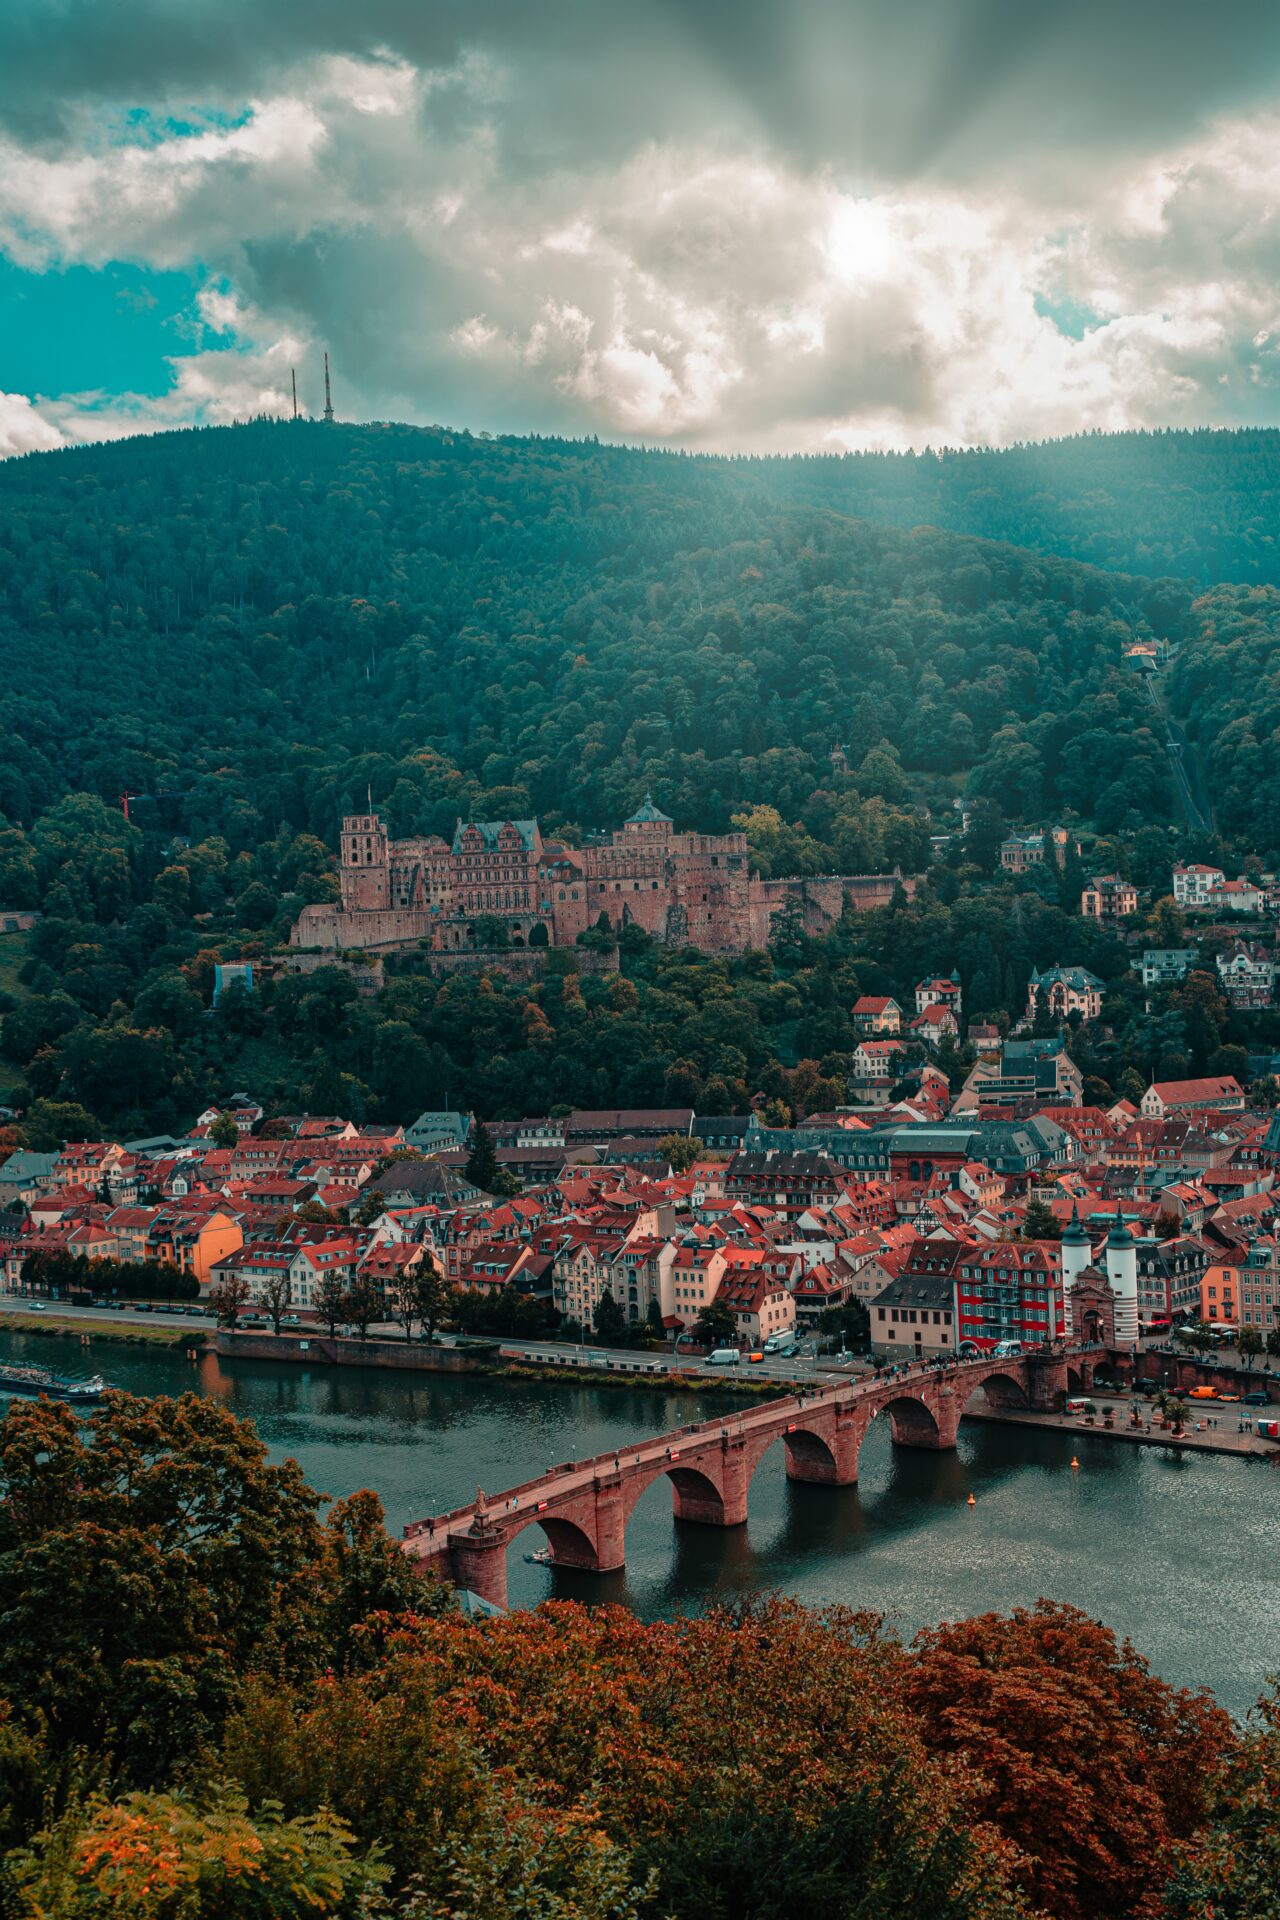 Ein Tag in Heidelberg: die Alte Brücke